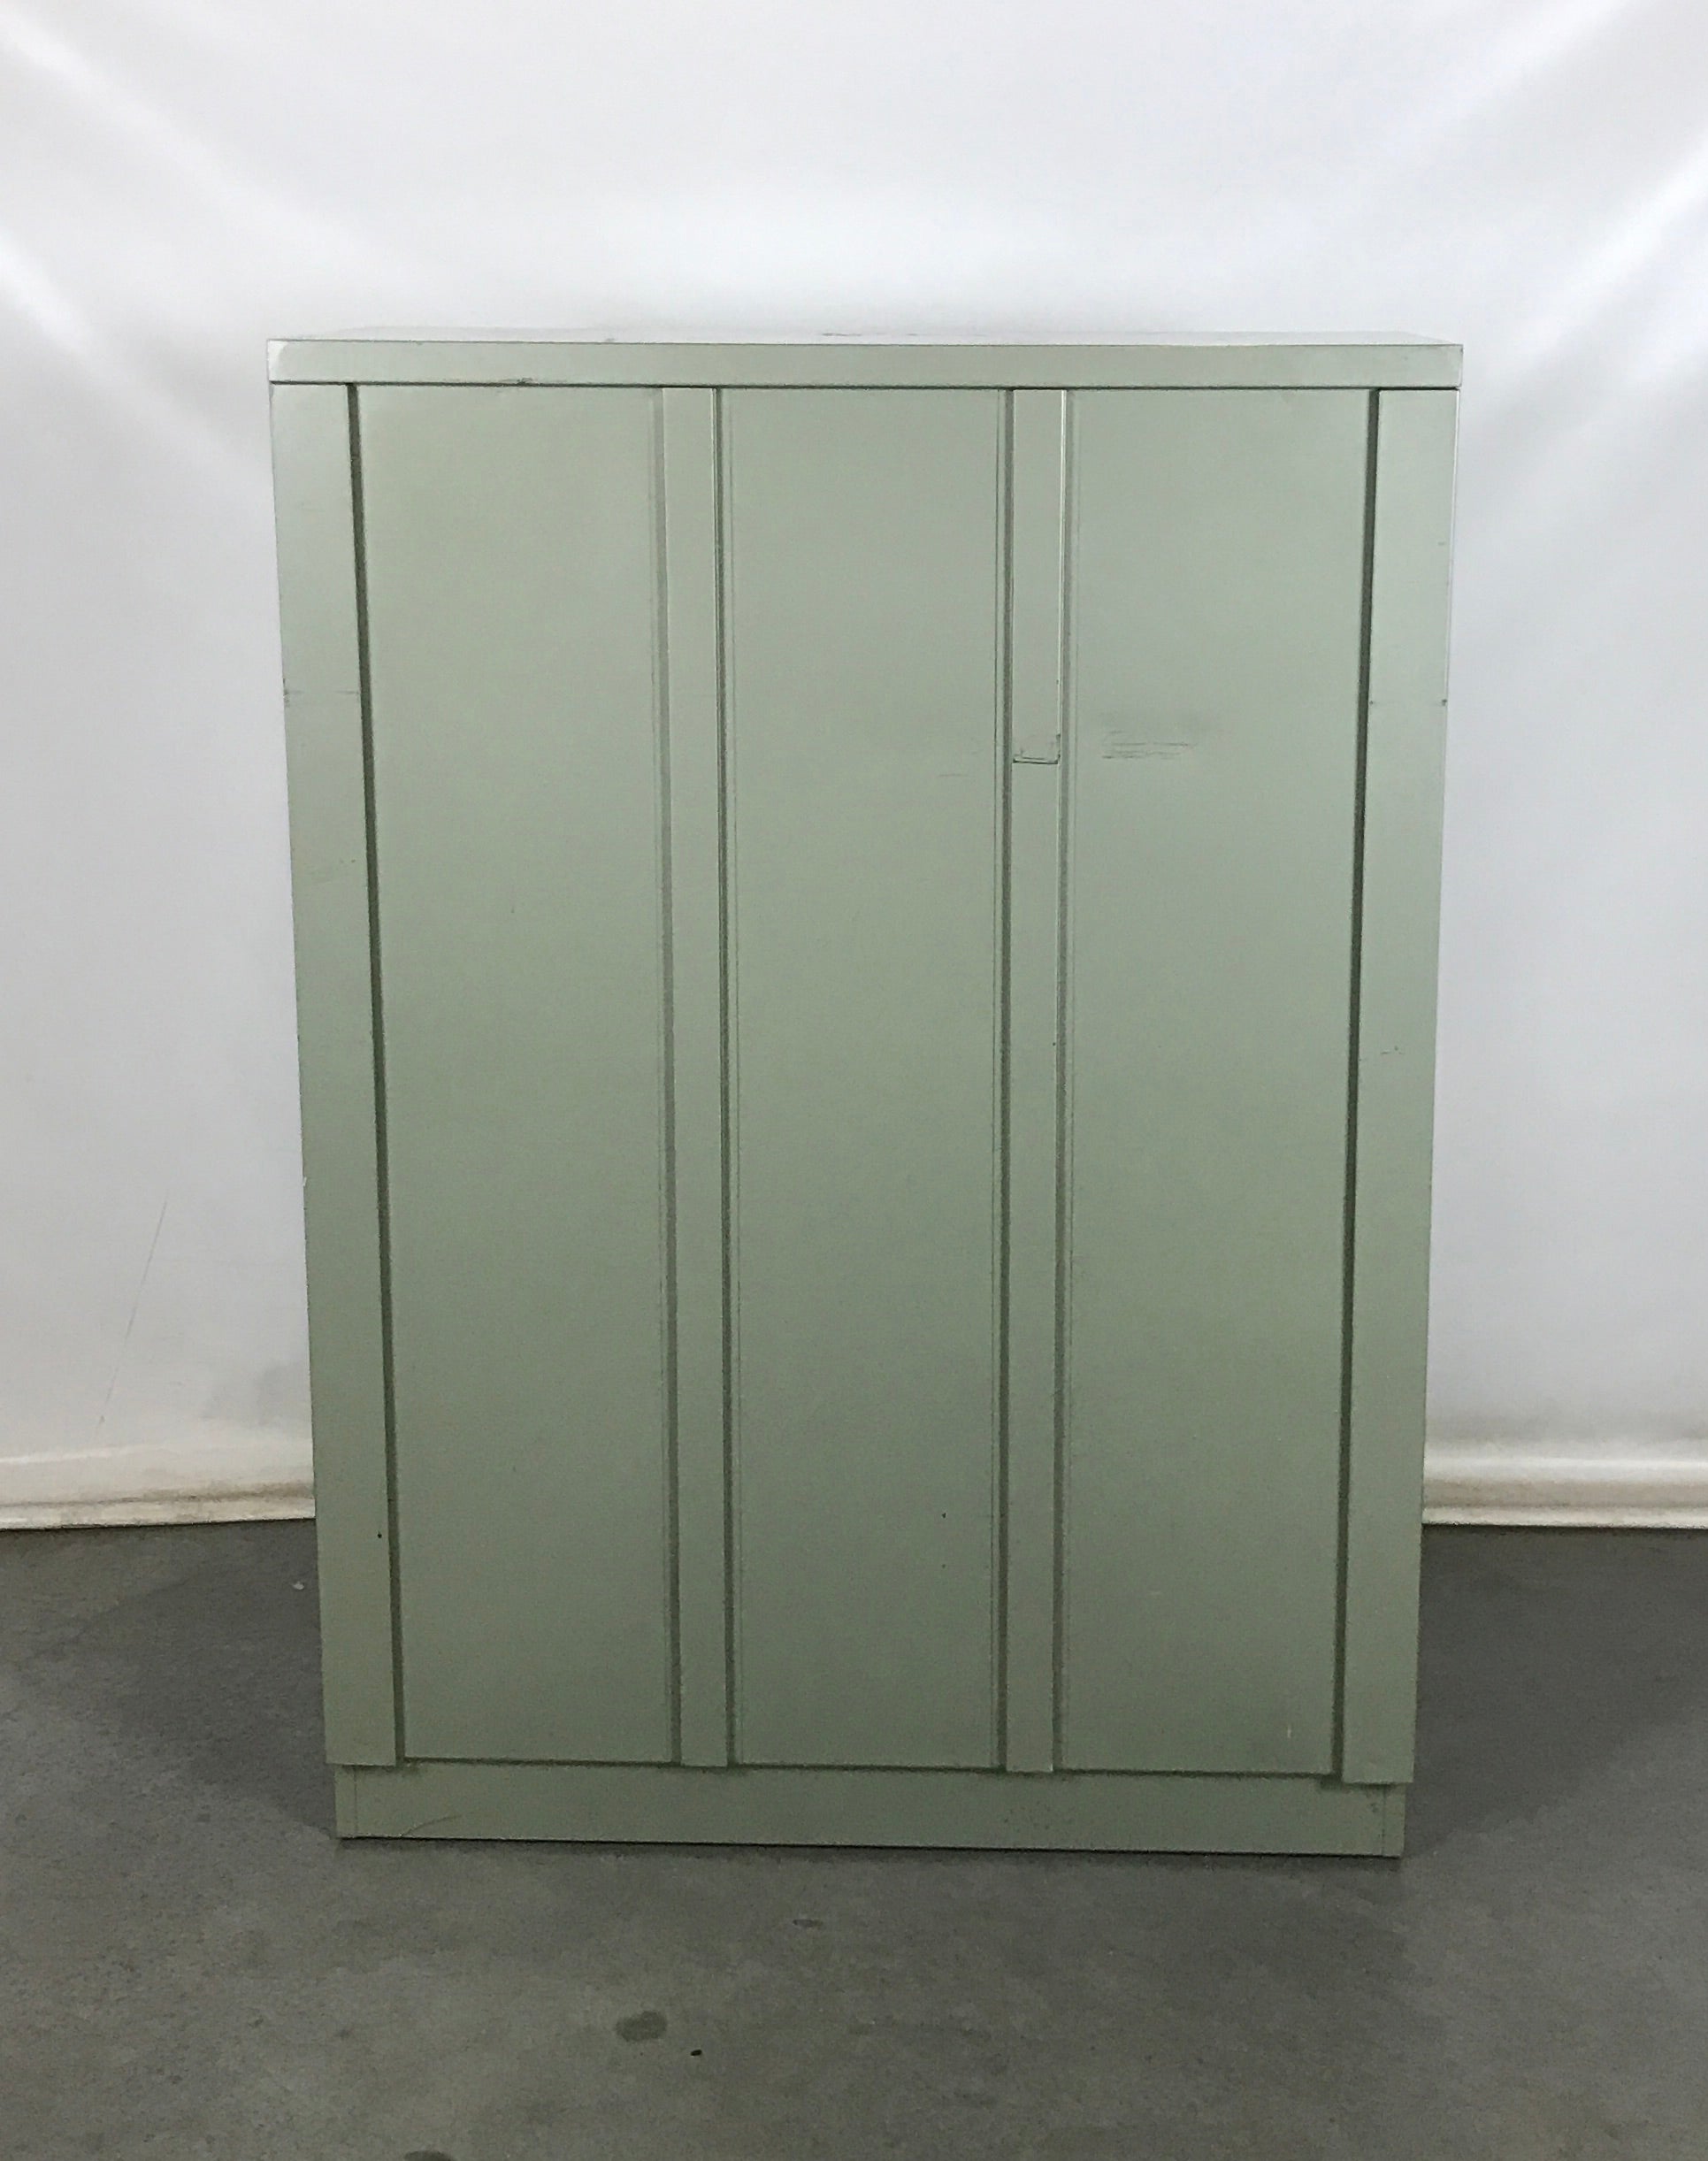 Green Steelcase Metal Shelf